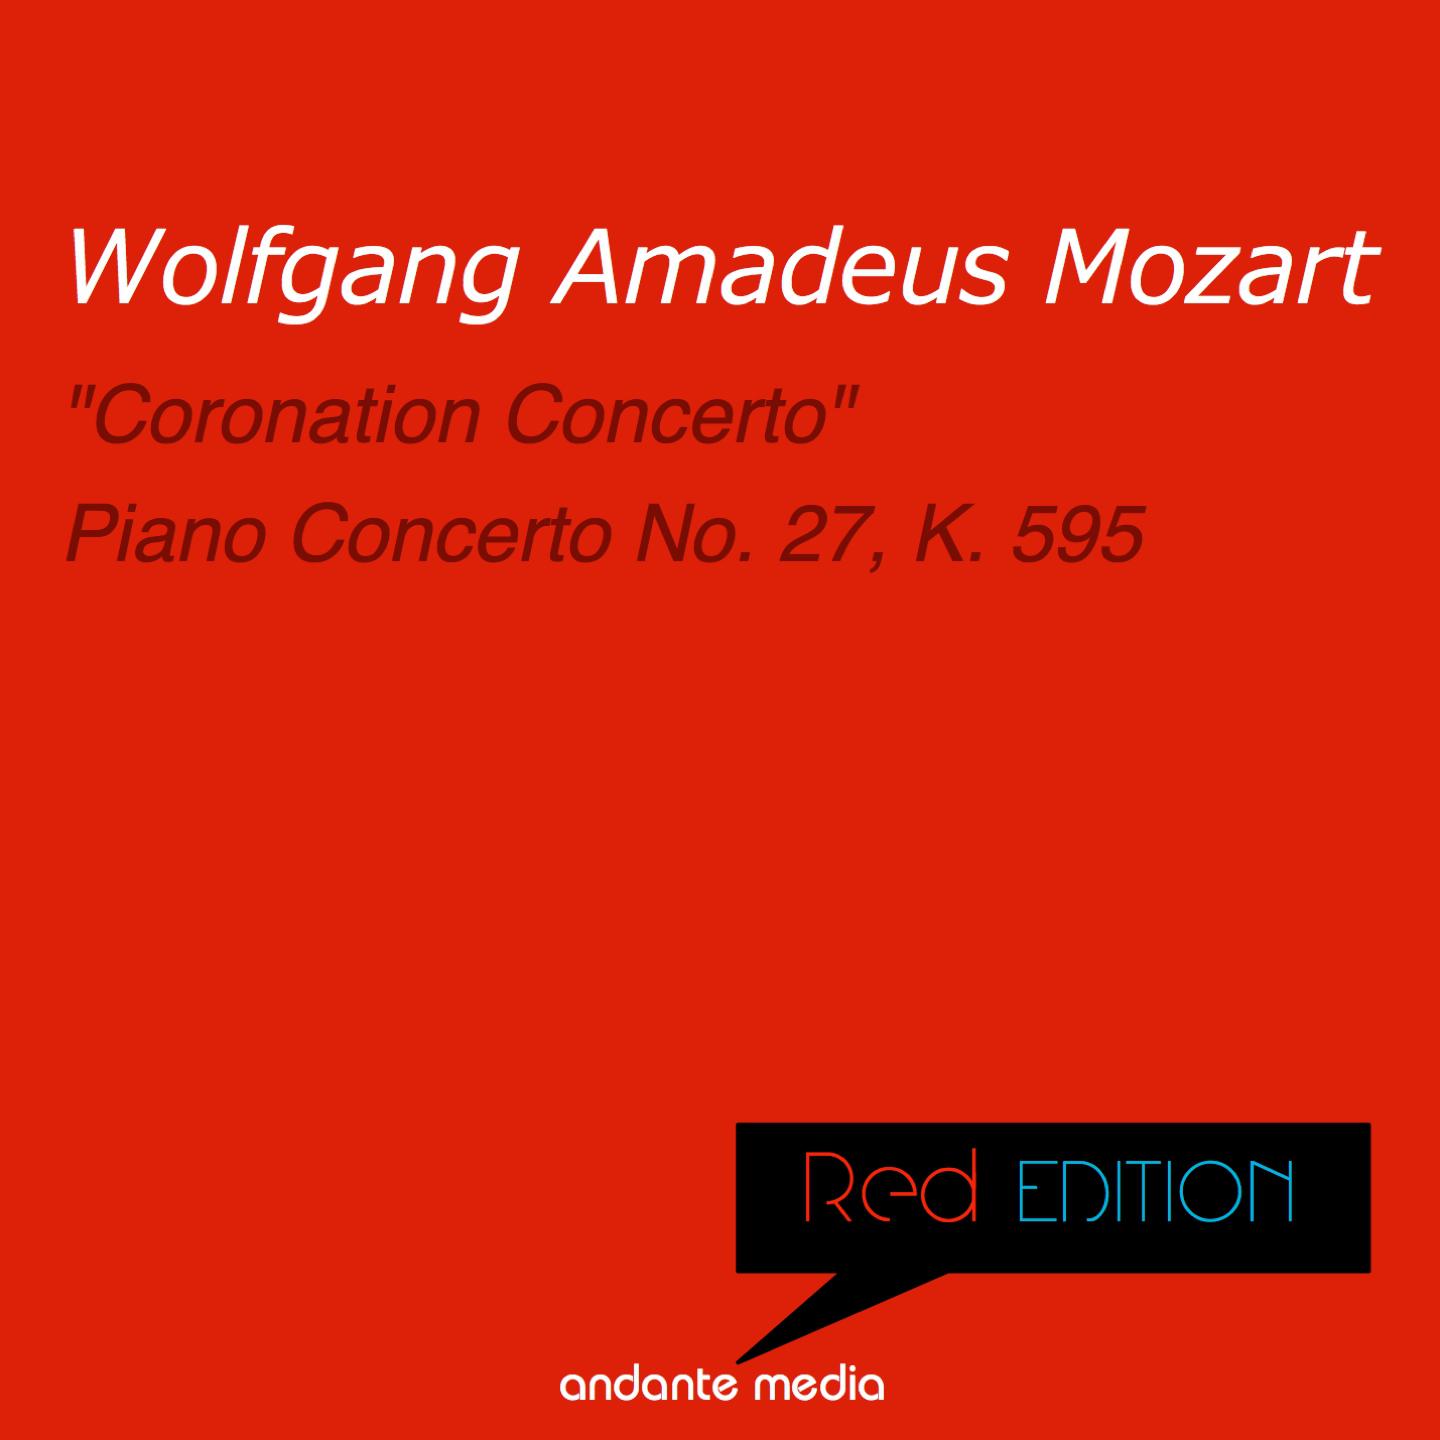 Piano Concerto No. 26 in D Major, Op. 46, K. 537 "Coronation Concerto": I. Allegro